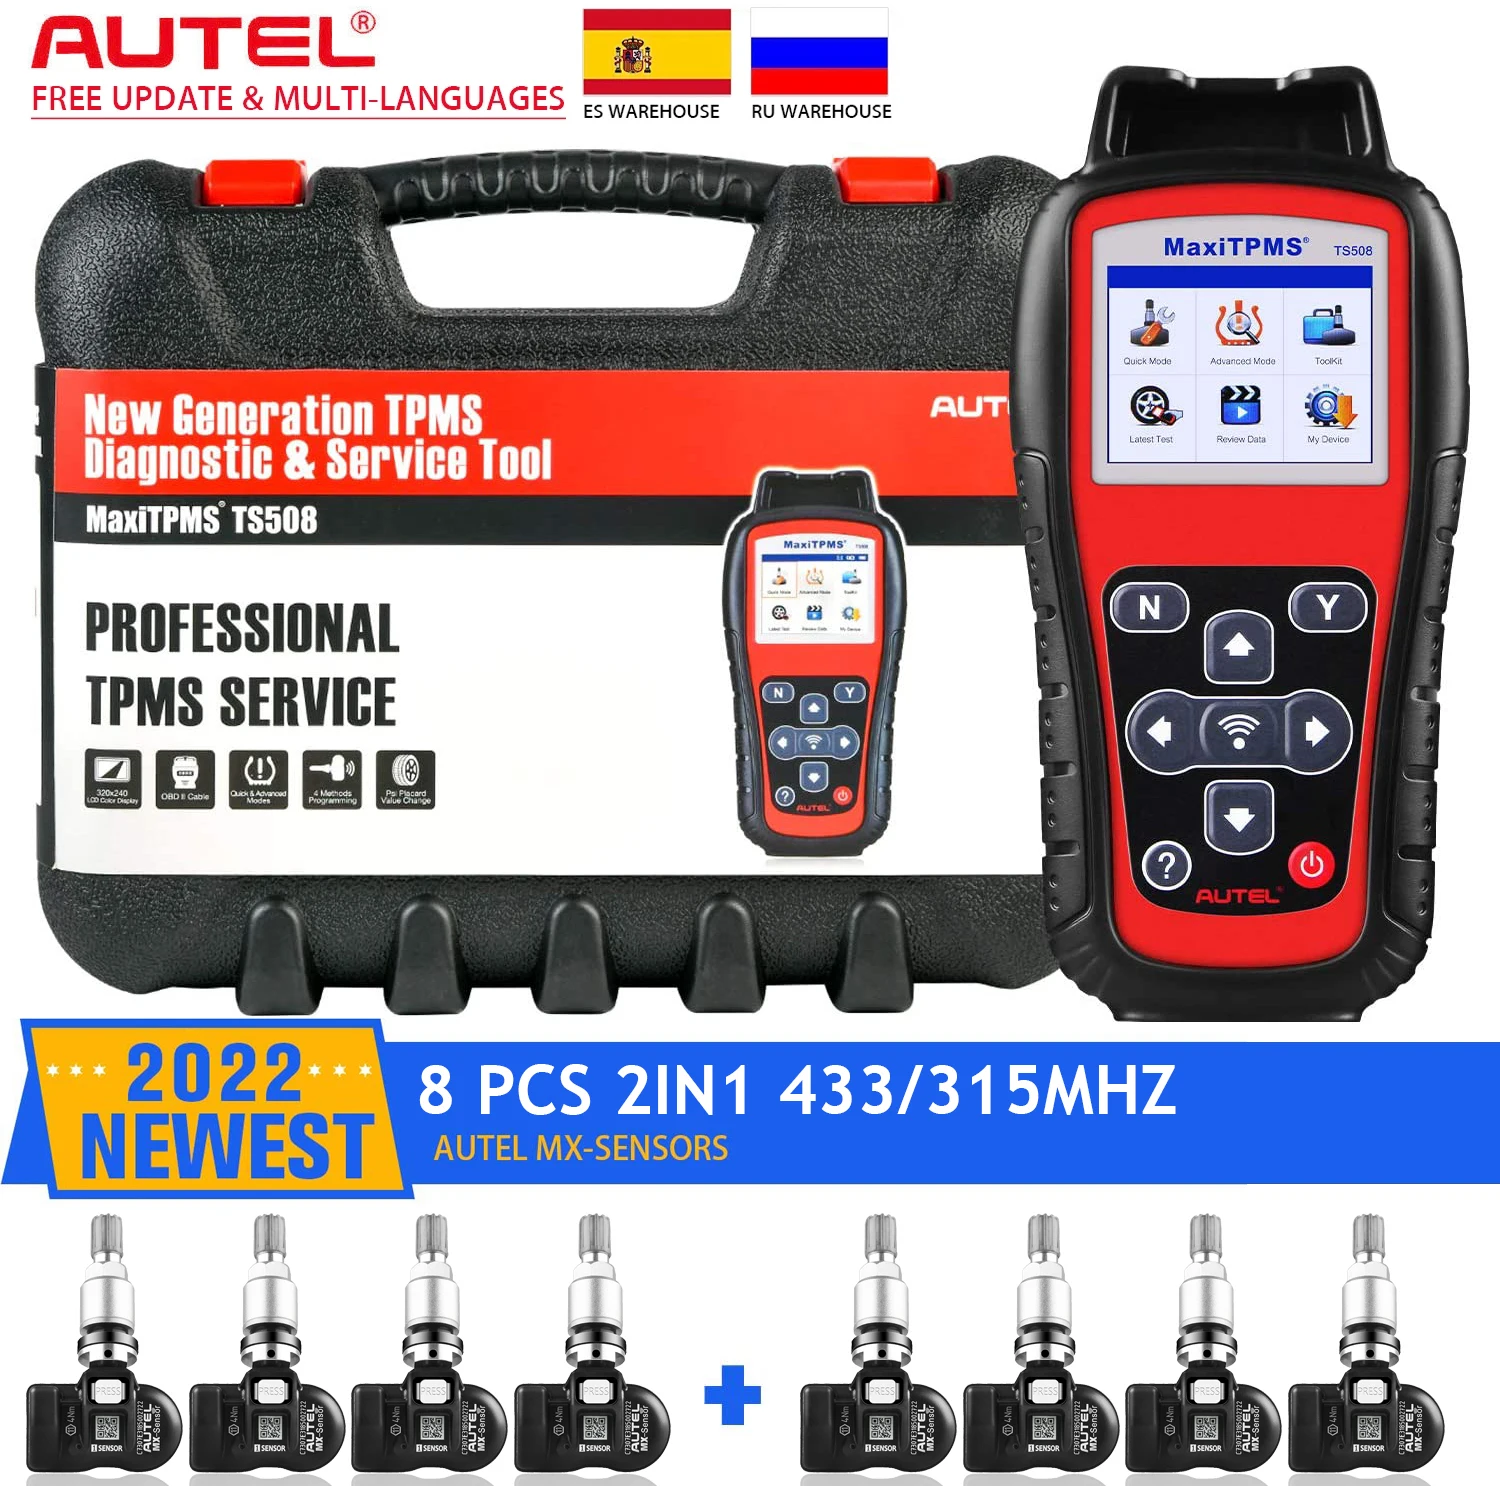 

Autel MaxiTPMS TS508 TPMS Diagnostic Tool with 8pc MX-Sensor 433MHZ/315MHZ Professional Tire Pressure Tool Programming MX-Sensor